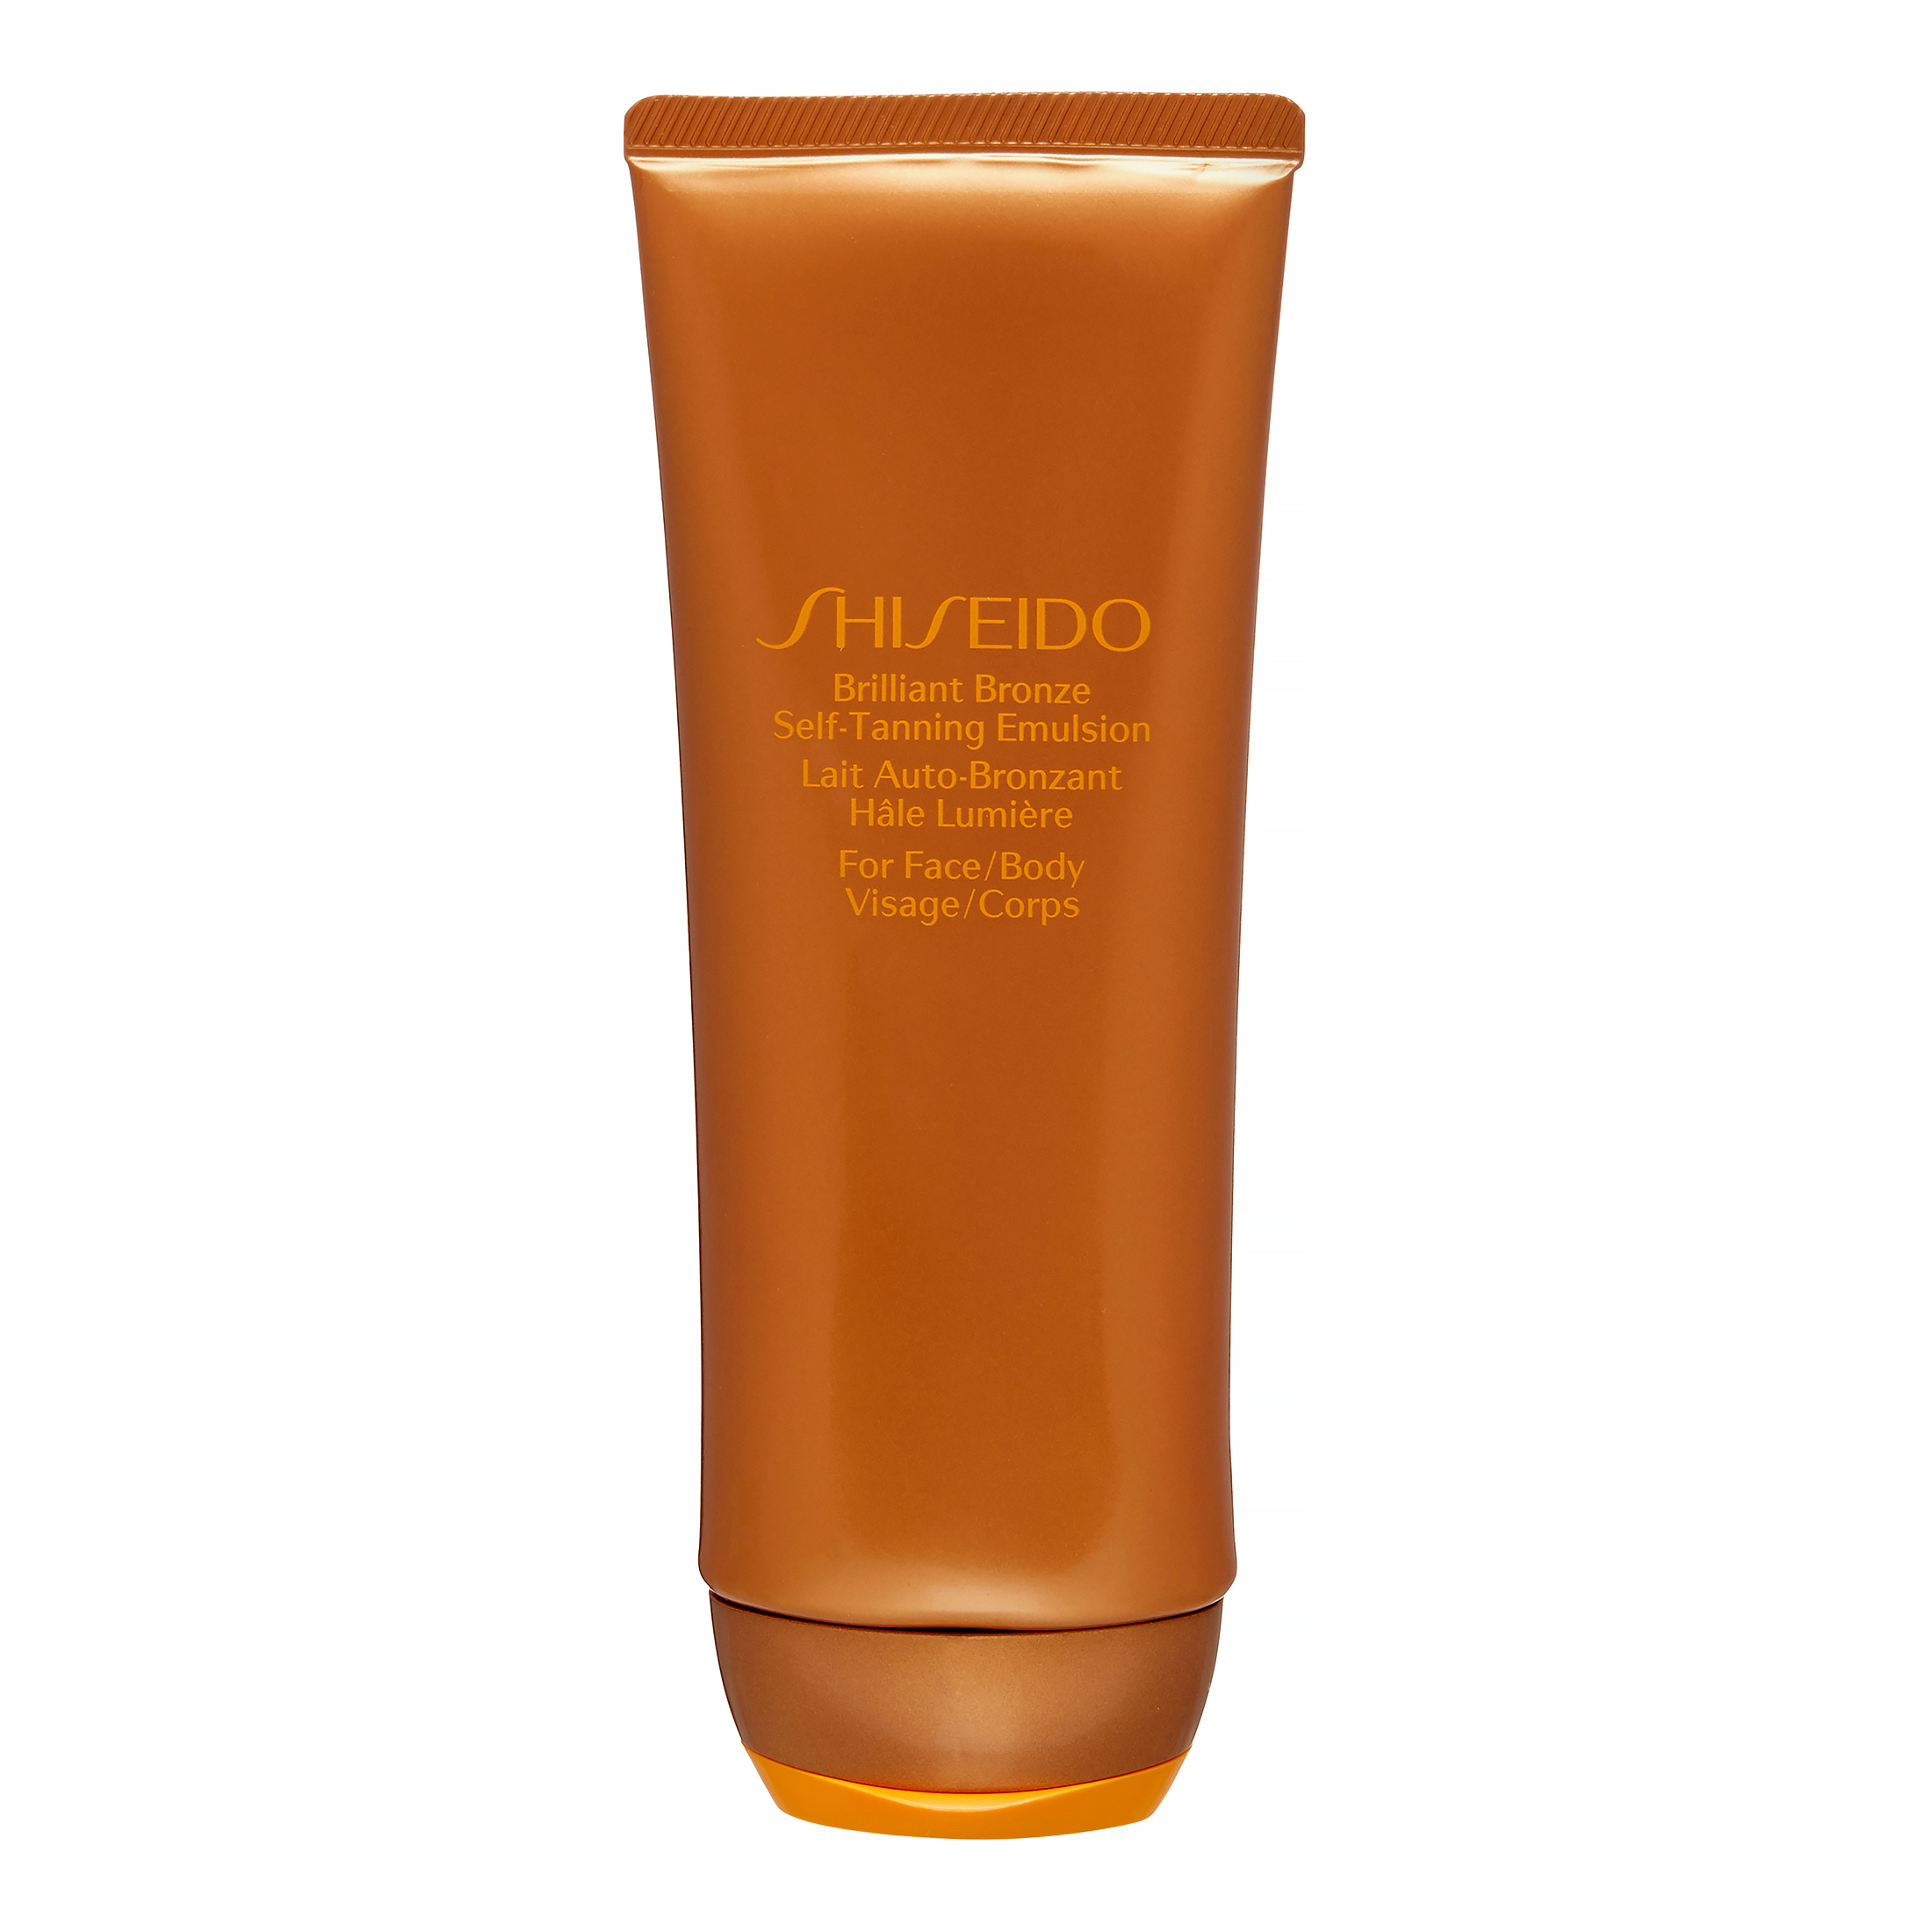 Shiseido Brilliant Bronze Self-Tanning Emulsion for Face & Body, 3.5 Oz